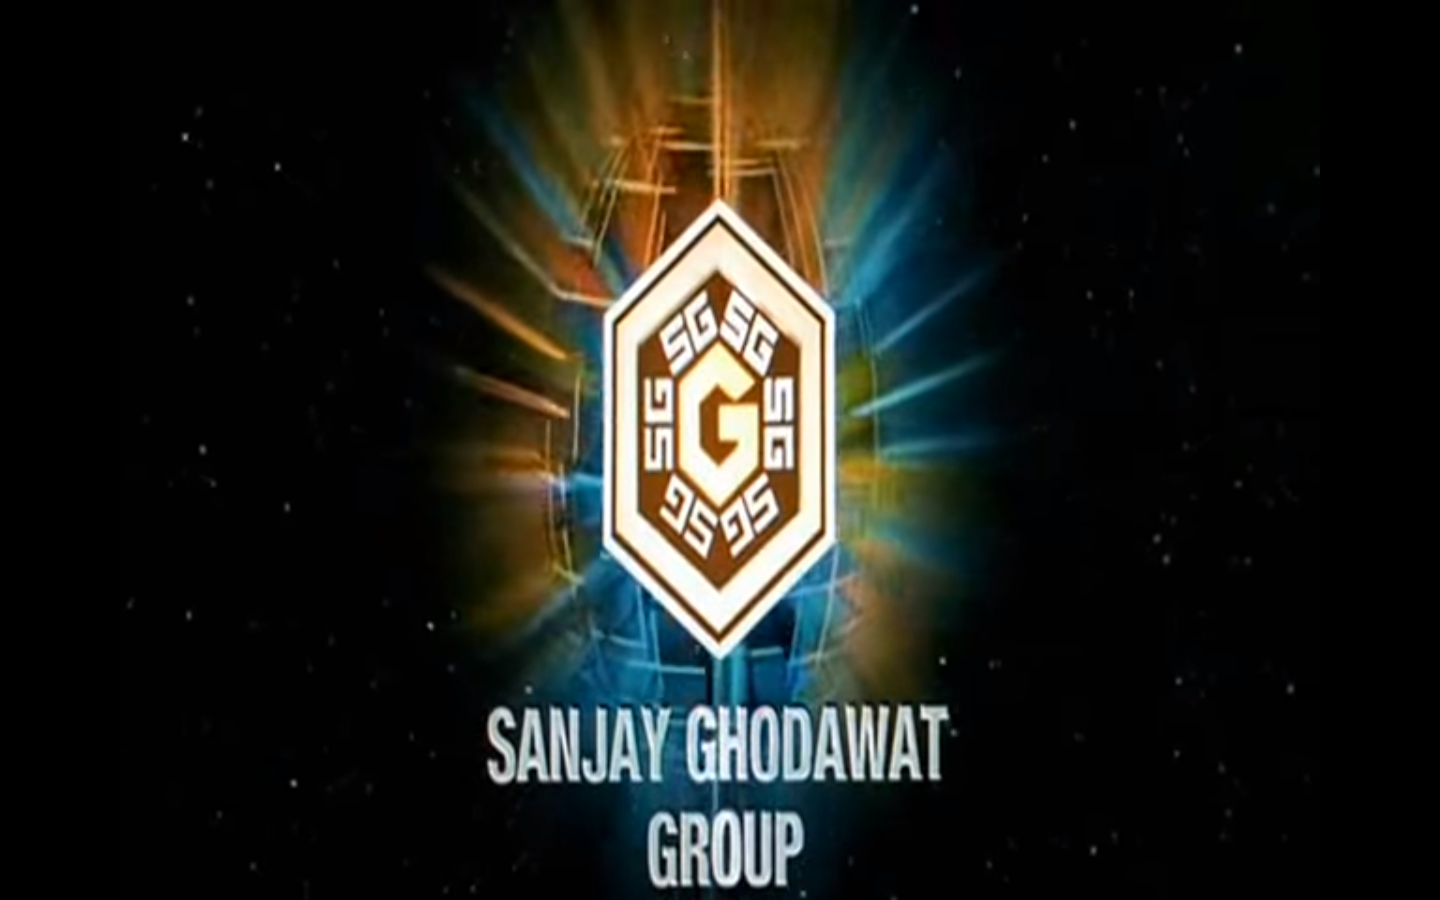 sanjay logo image